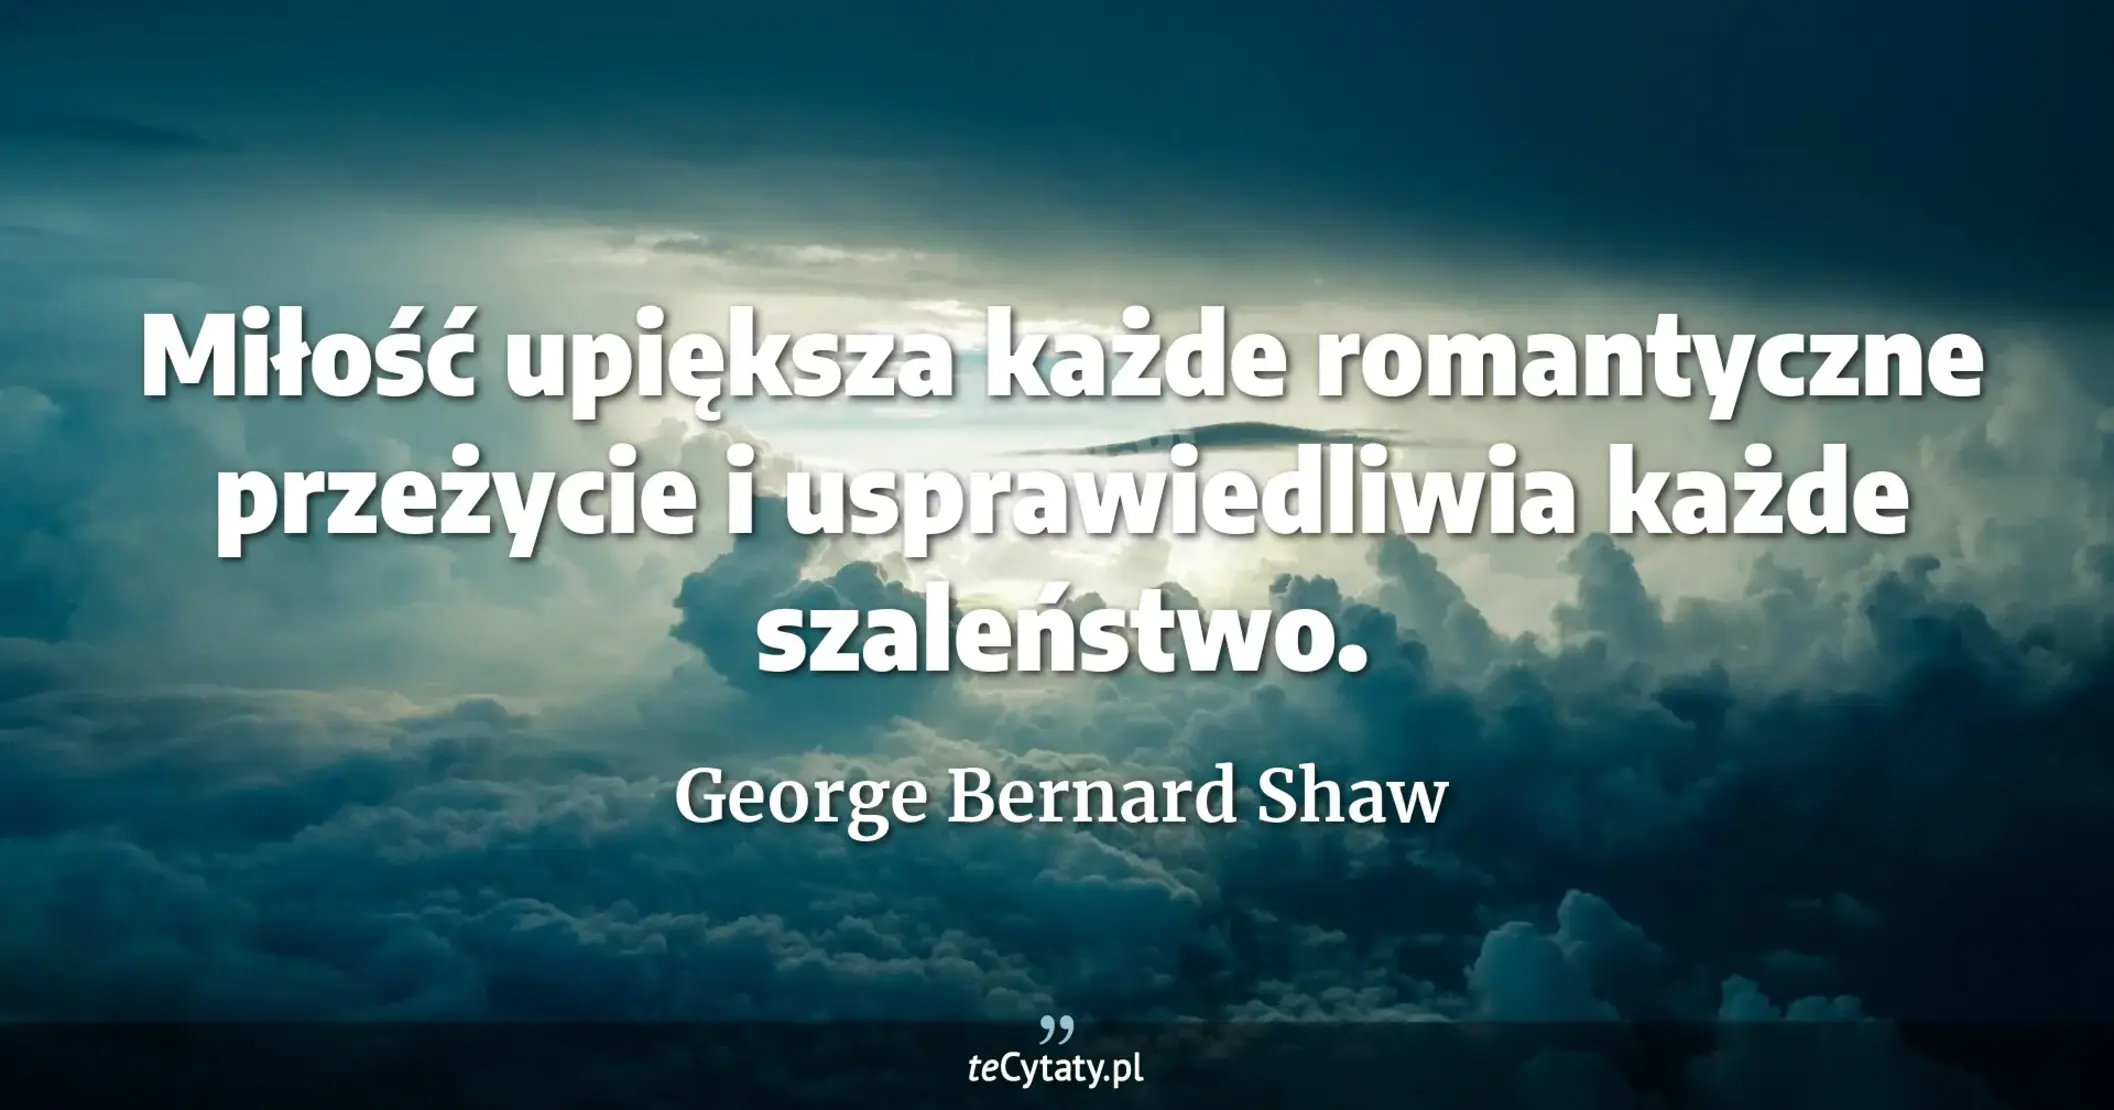 Miłość upiększa każde romantyczne przeżycie i usprawiedliwia każde szaleństwo. - George Bernard Shaw